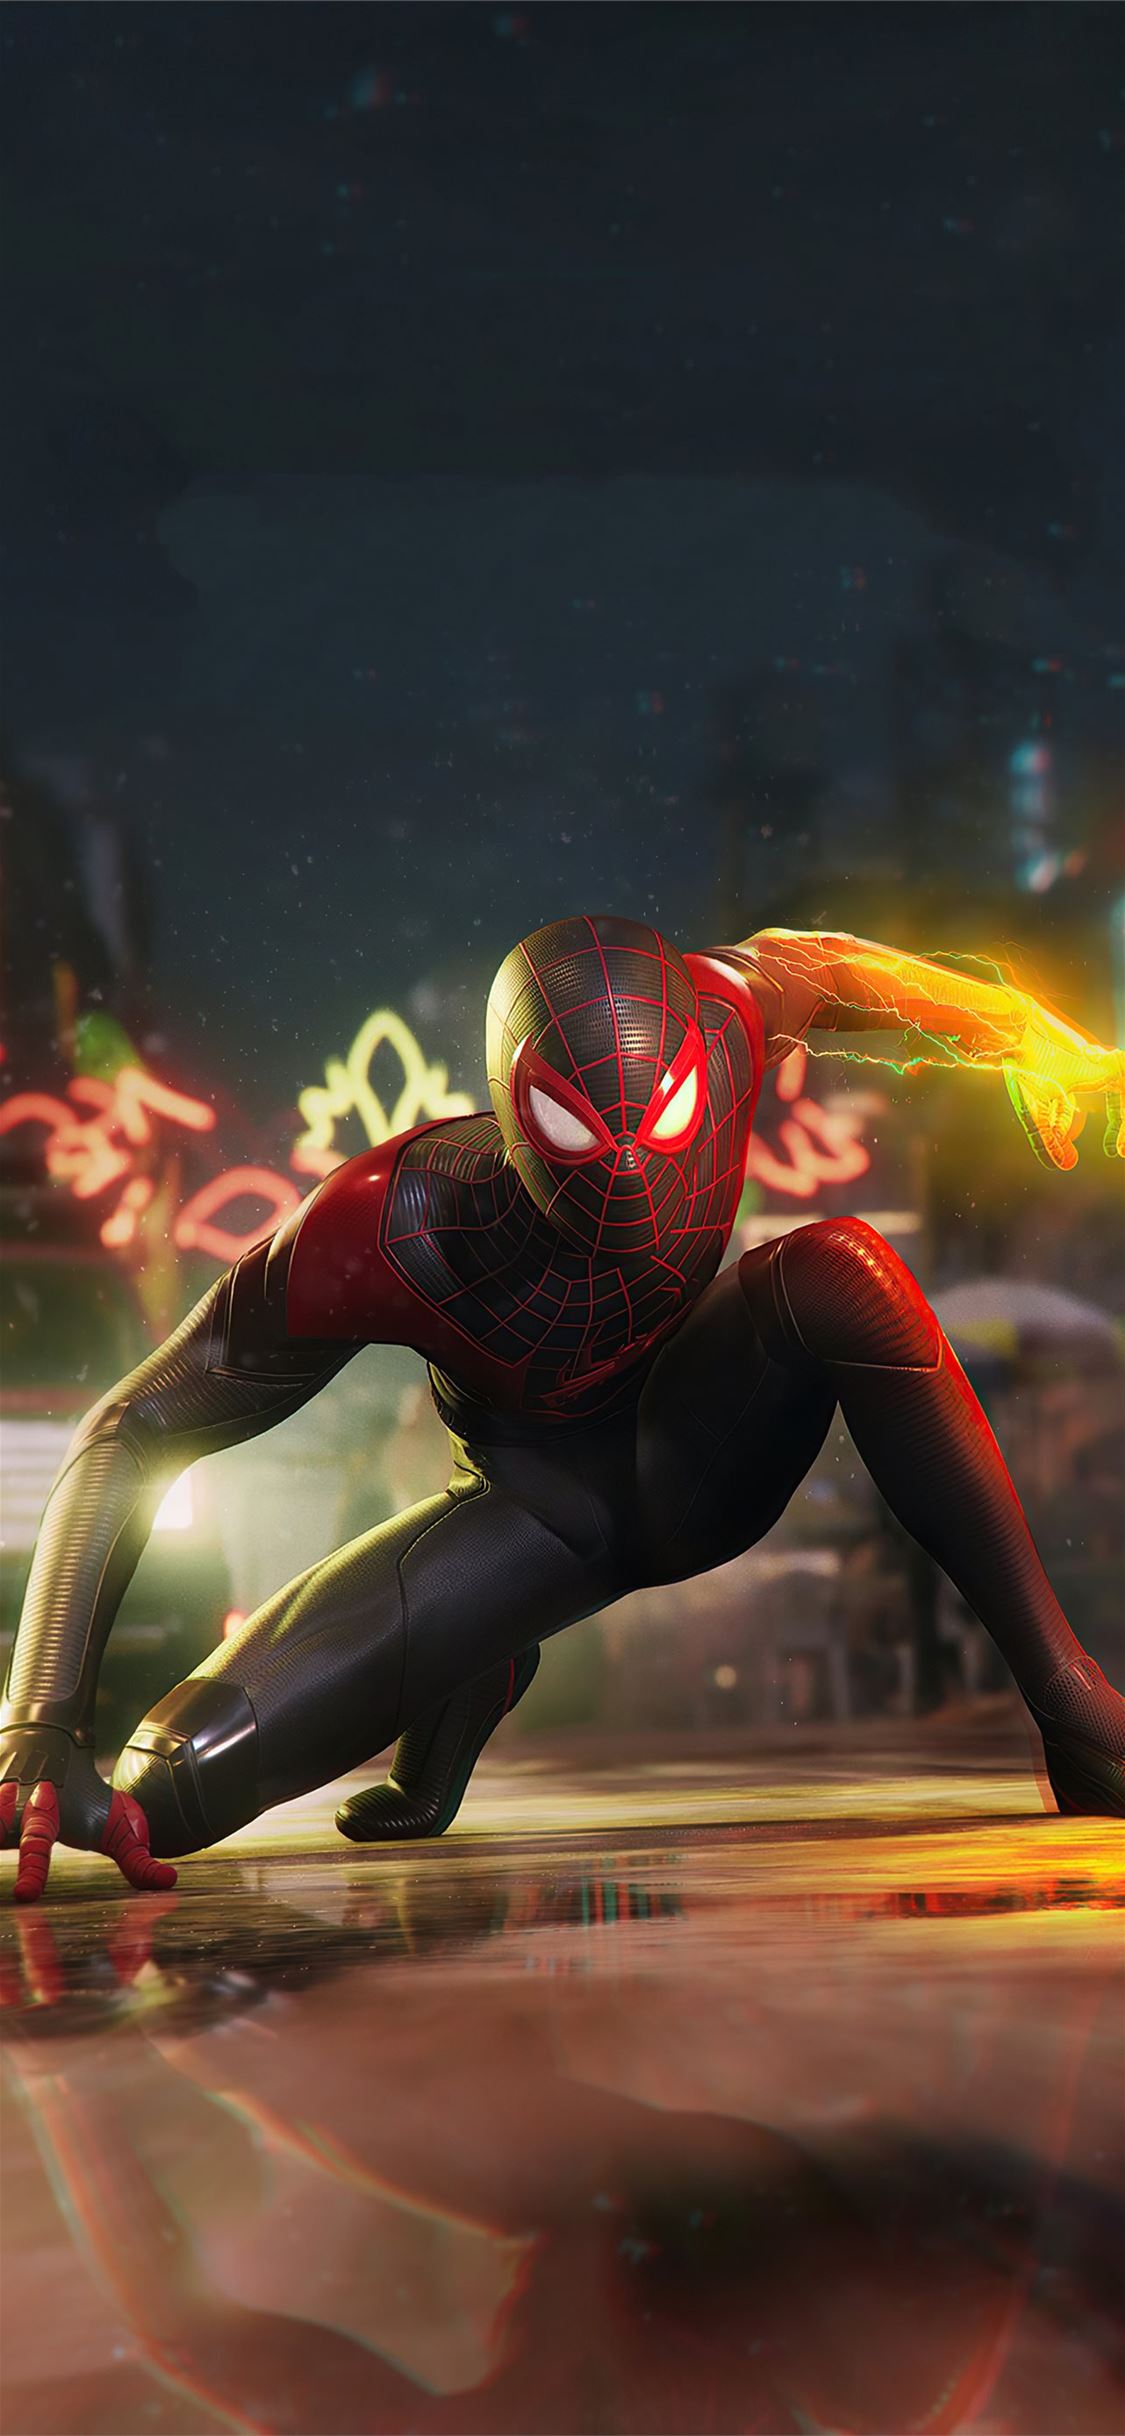 Marvel's Spider-Man 2 Wallpaper 4K, Cover Art